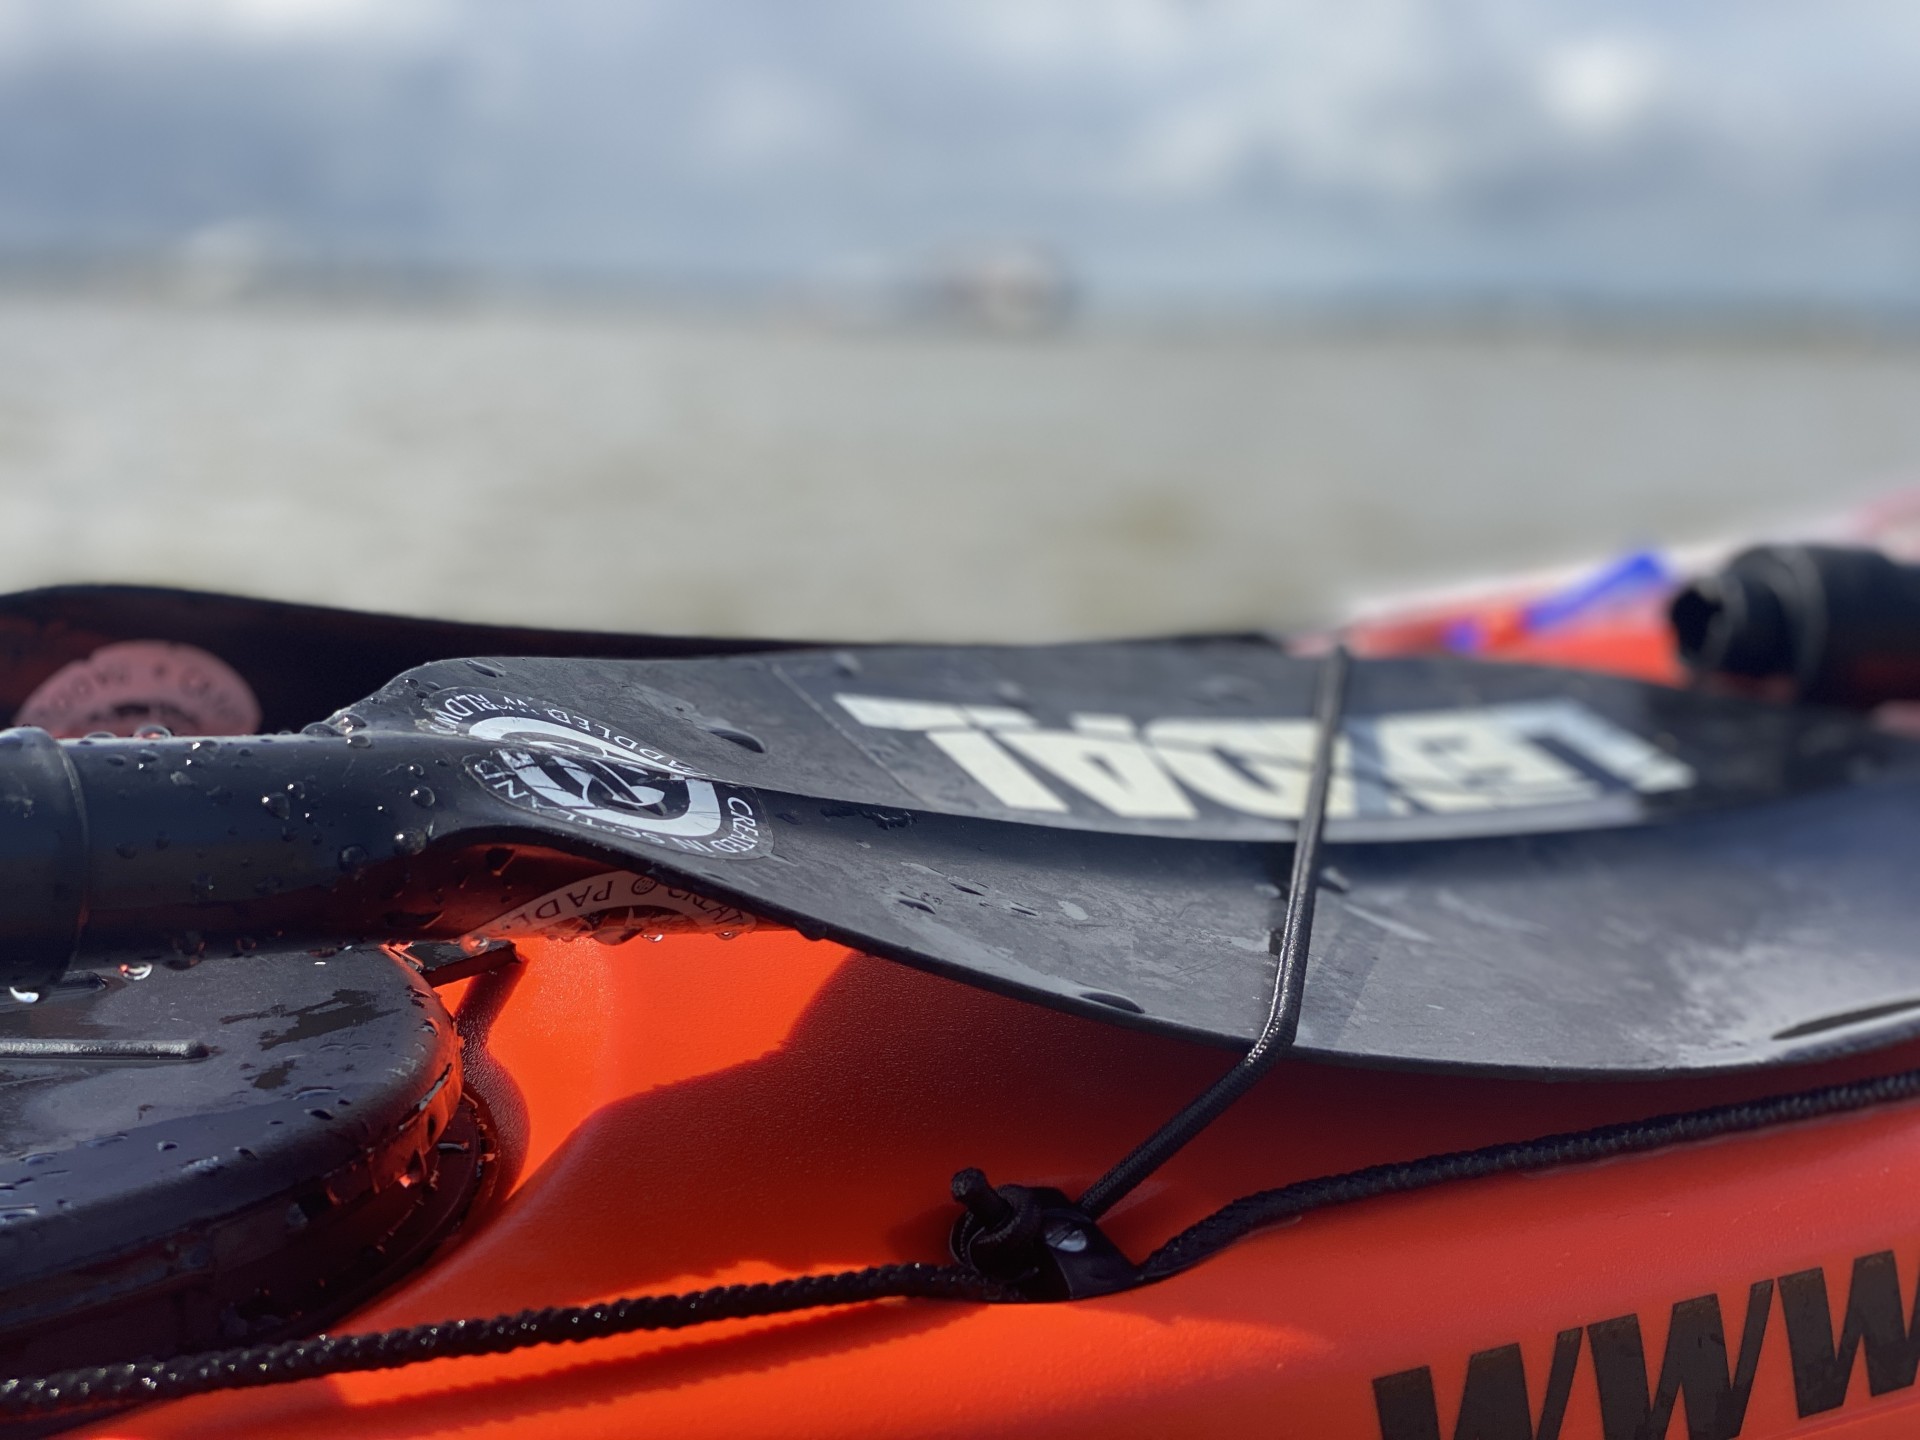 Black Lendal paddle on an orange sea kayak, NOMAD Sea Kayaking guide boat.